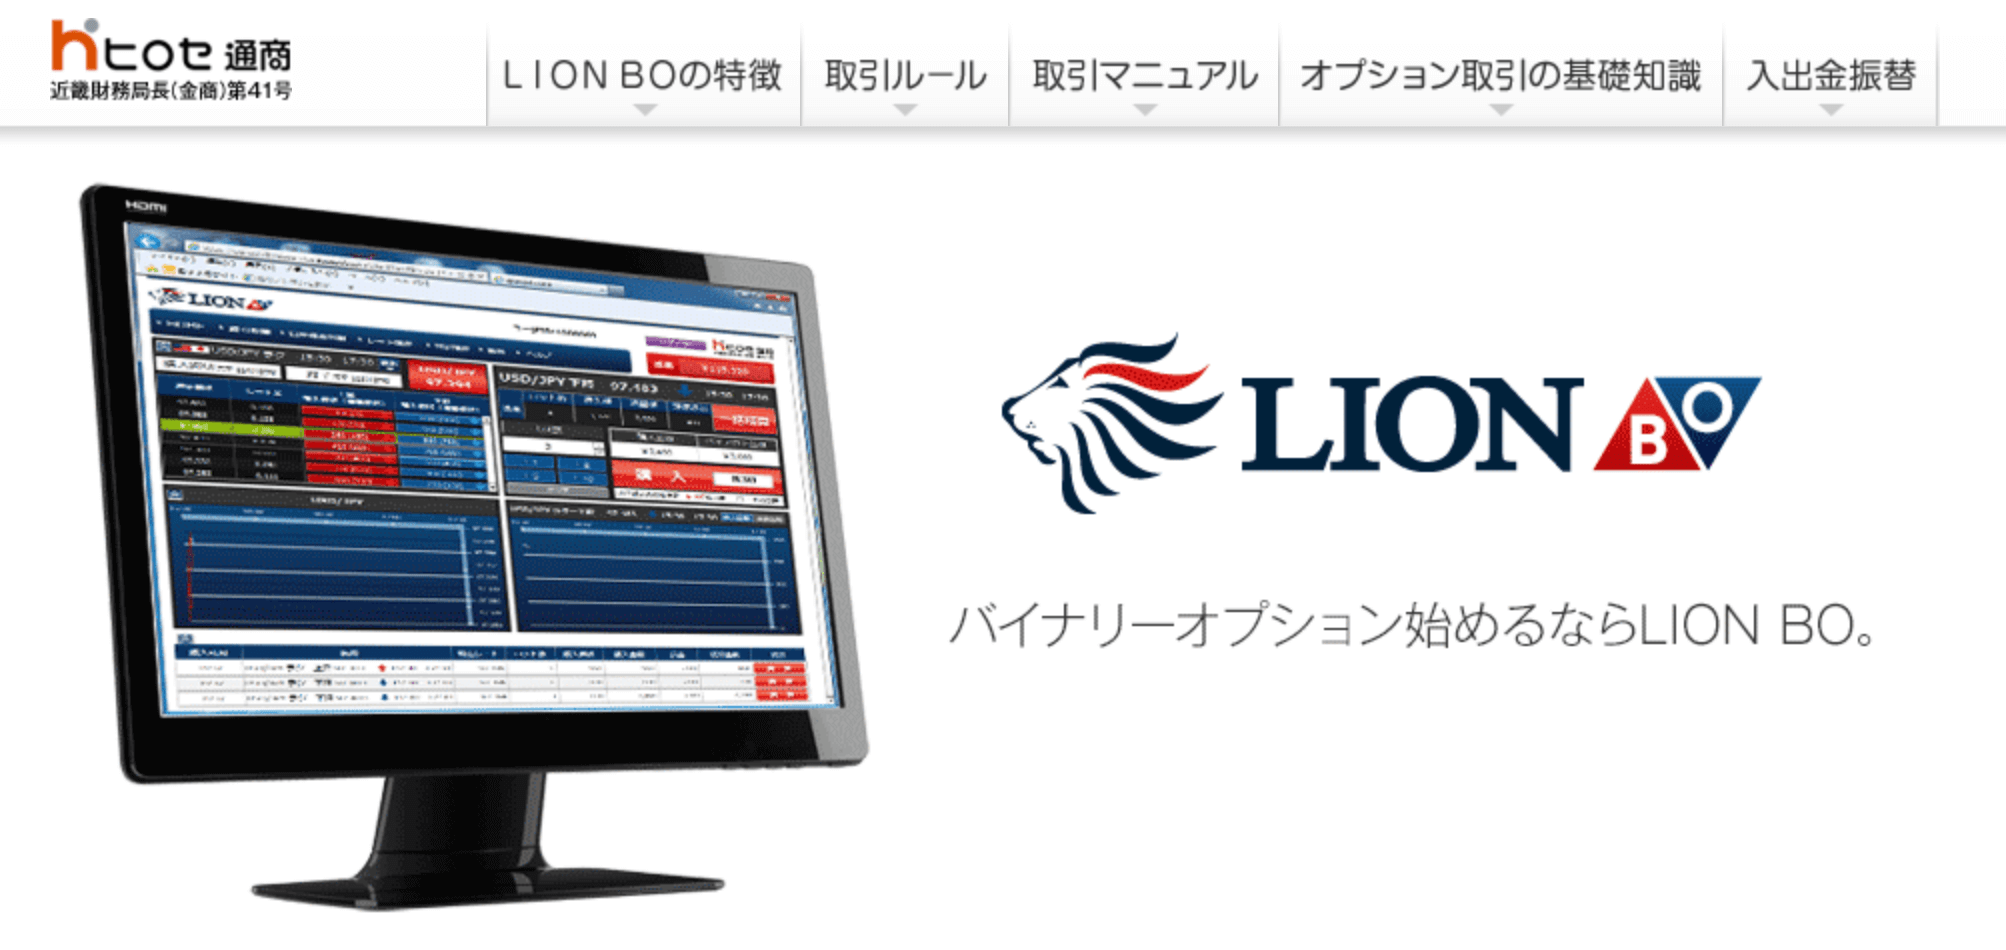 LION BO(ヒロセ通商)